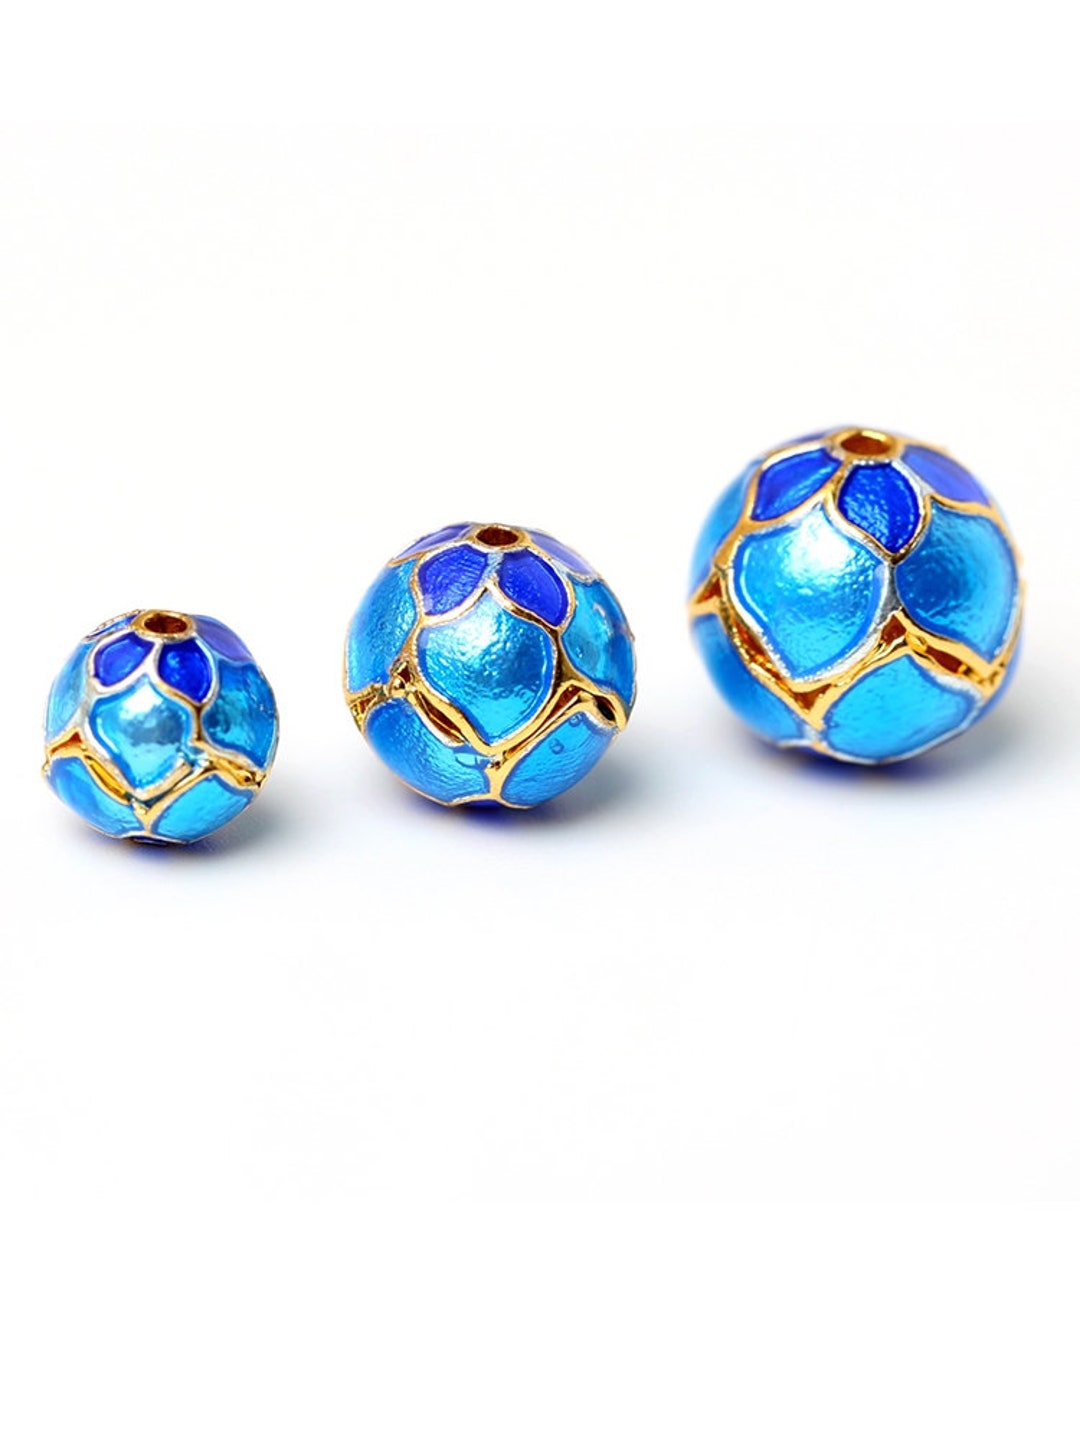 Cloisonne Bead 8-12mm Flower Bead DIY Beads Blue Enamel Fine Copper ...